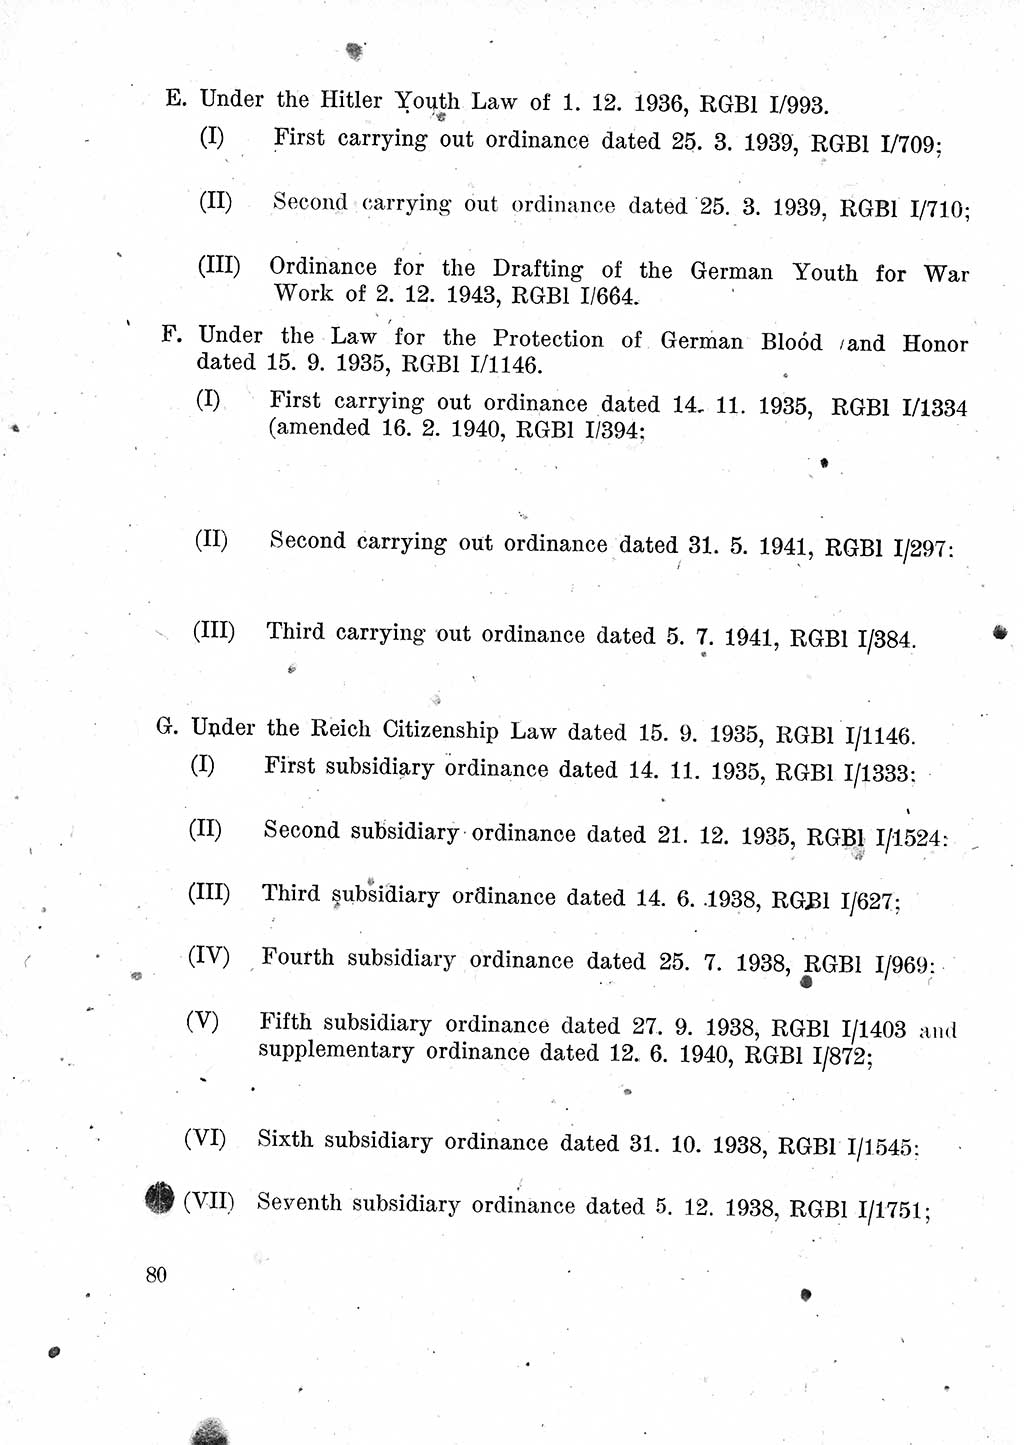 Das Recht der Besatzungsmacht (Deutschland), Proklamationen, Deklerationen, Verordnungen, Gesetze und Bekanntmachungen 1947, Seite 80 (R. Bes. Dtl. 1947, S. 80)